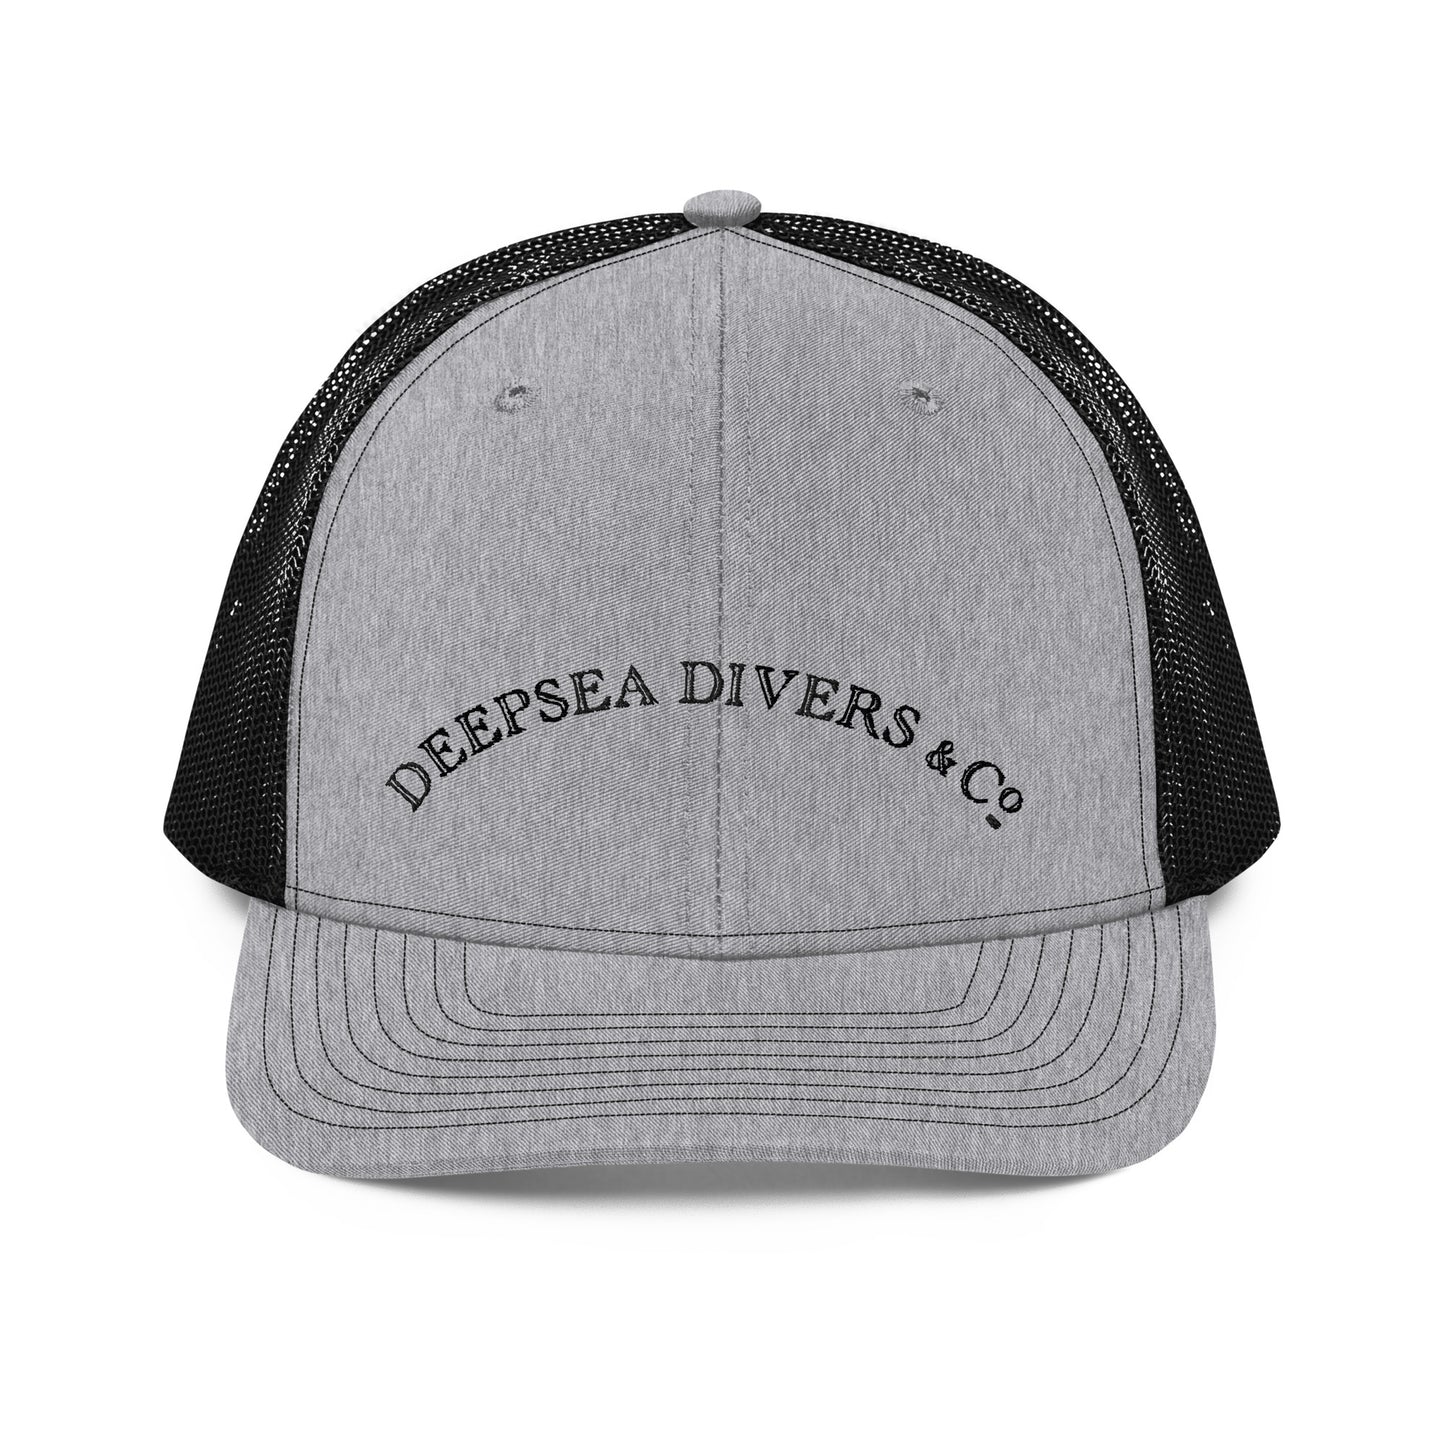 DeepSea Divers & Co.Trucker Cap